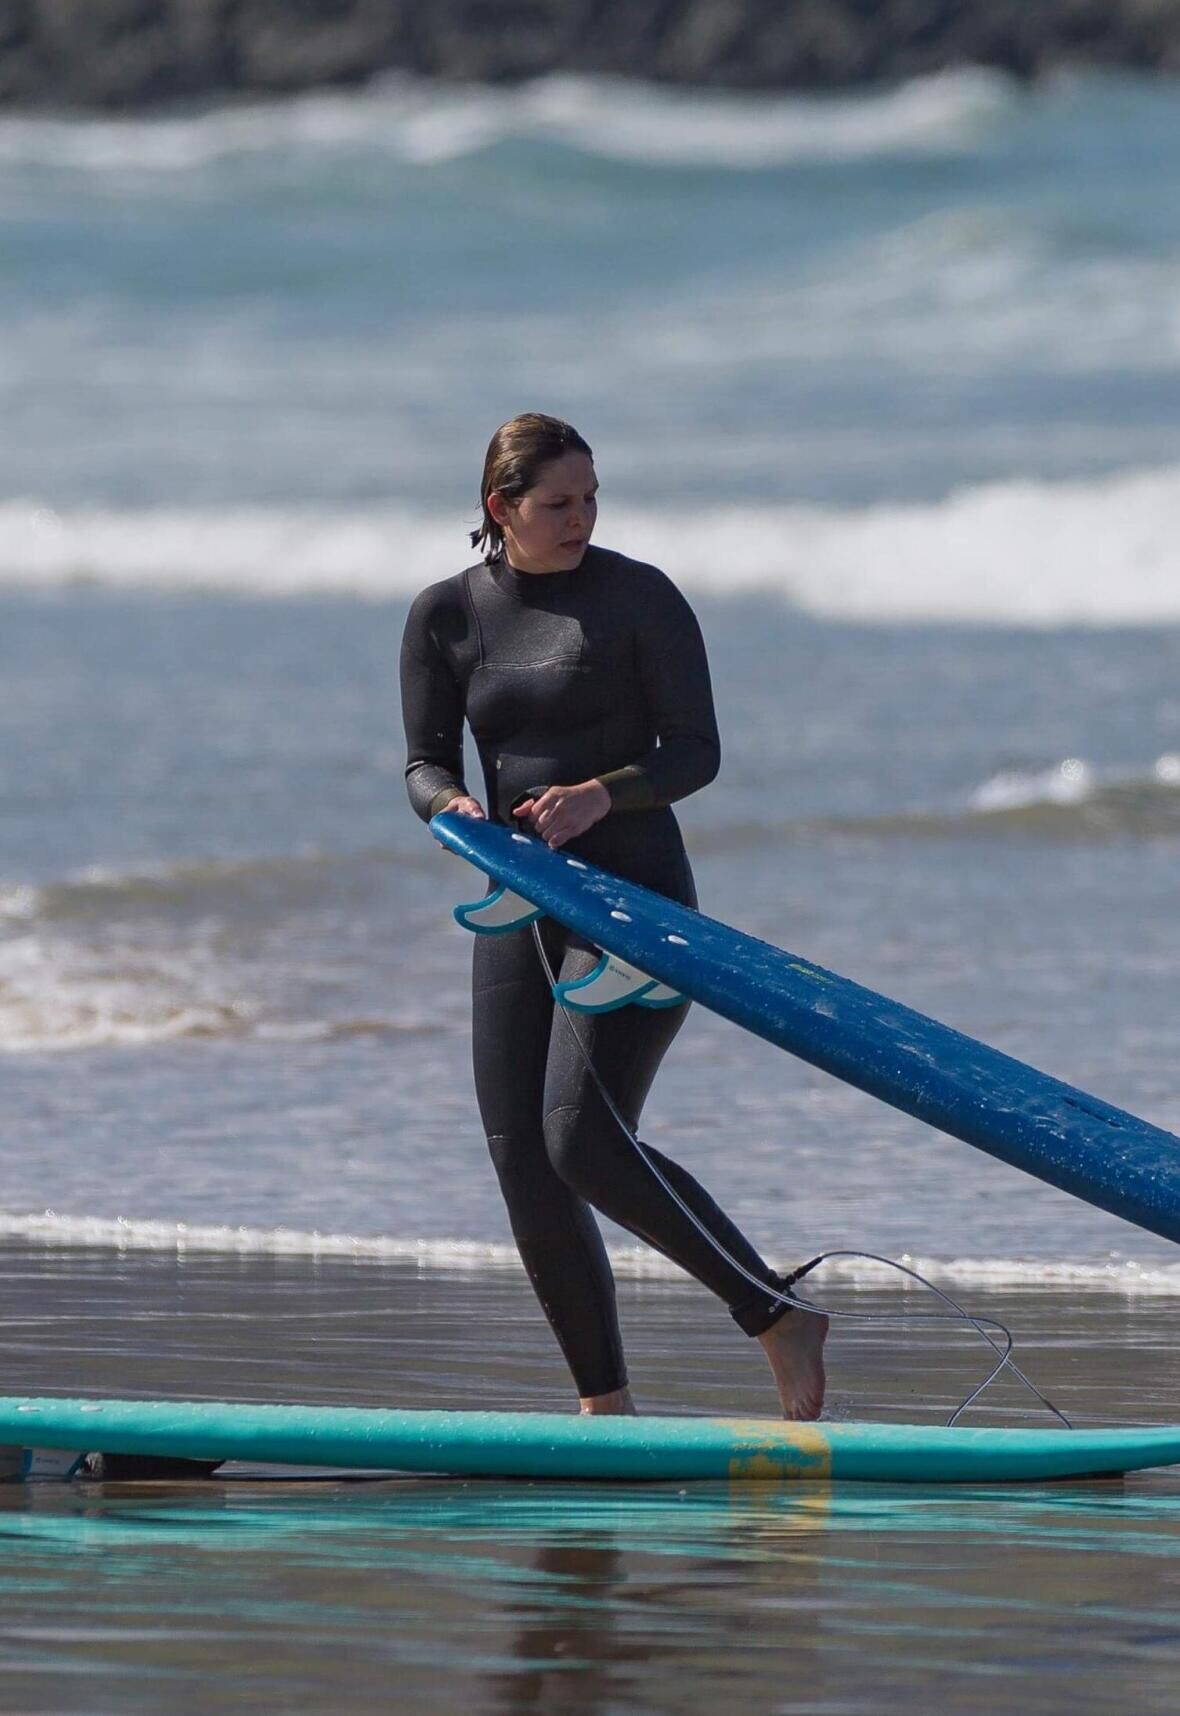 Débuter le surf: l'expérience d'une surfeuse en herbe